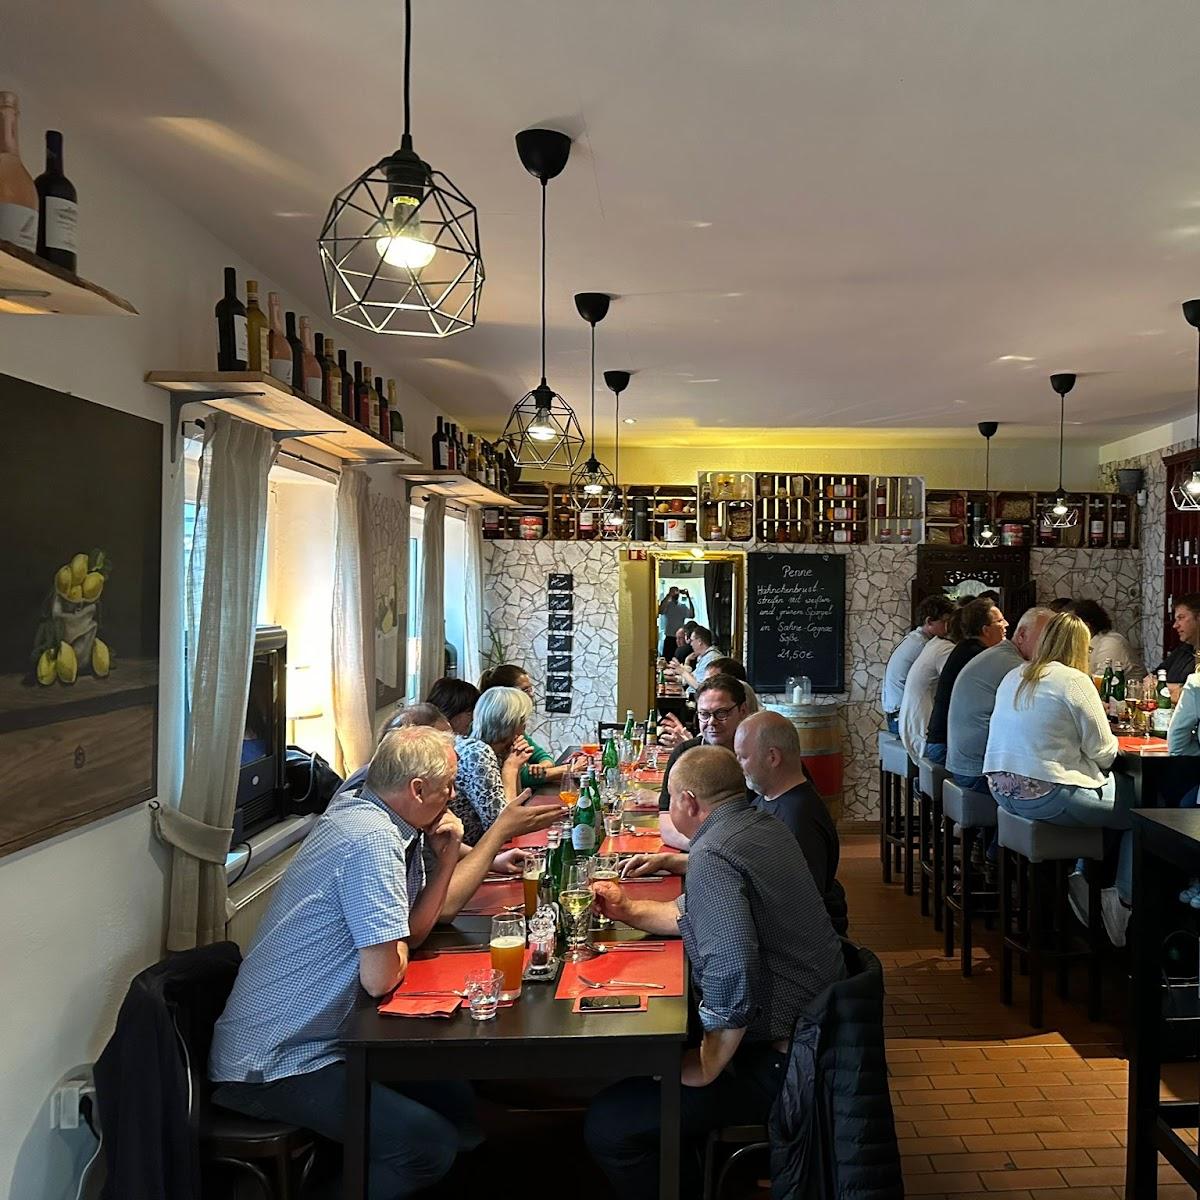 Restaurant "Bistro italia buchholz" in Buchholz in der Nordheide